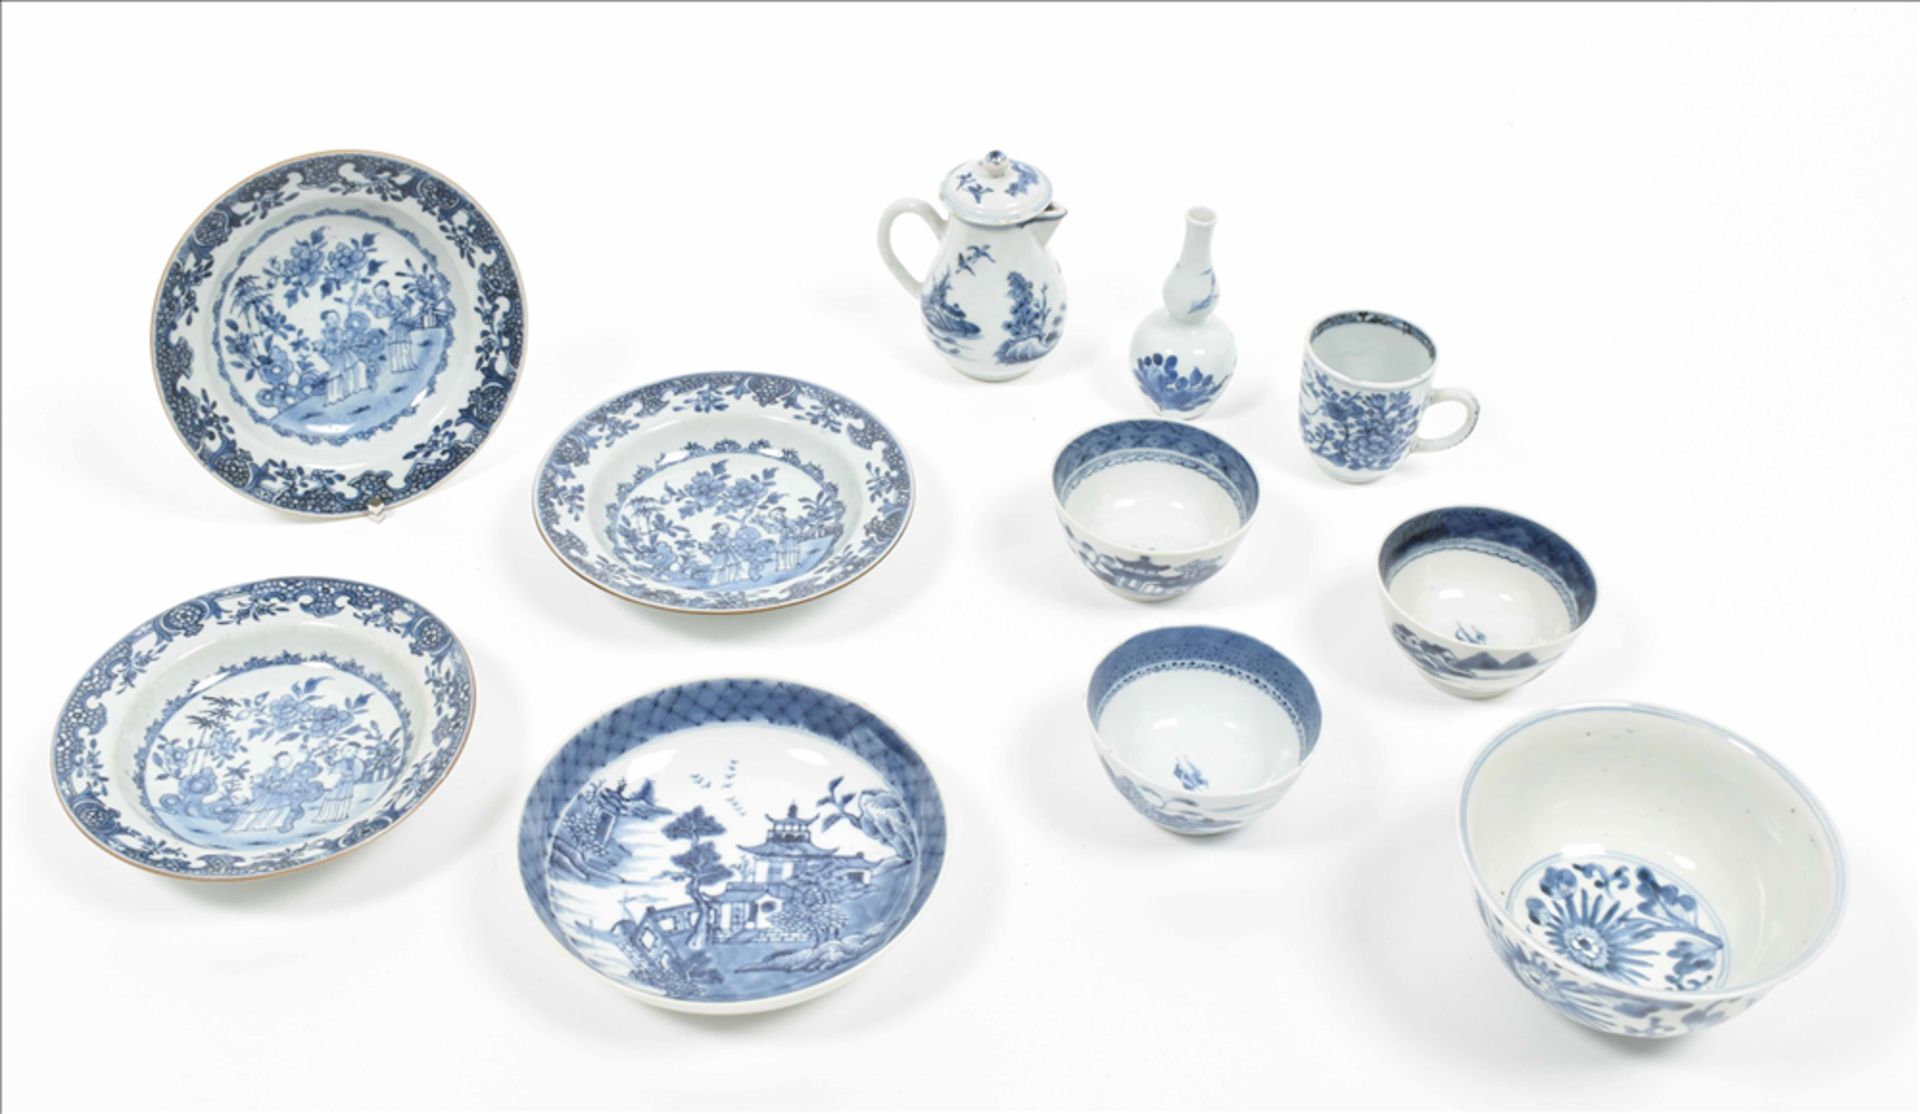 Eleven various pieces of porcelain